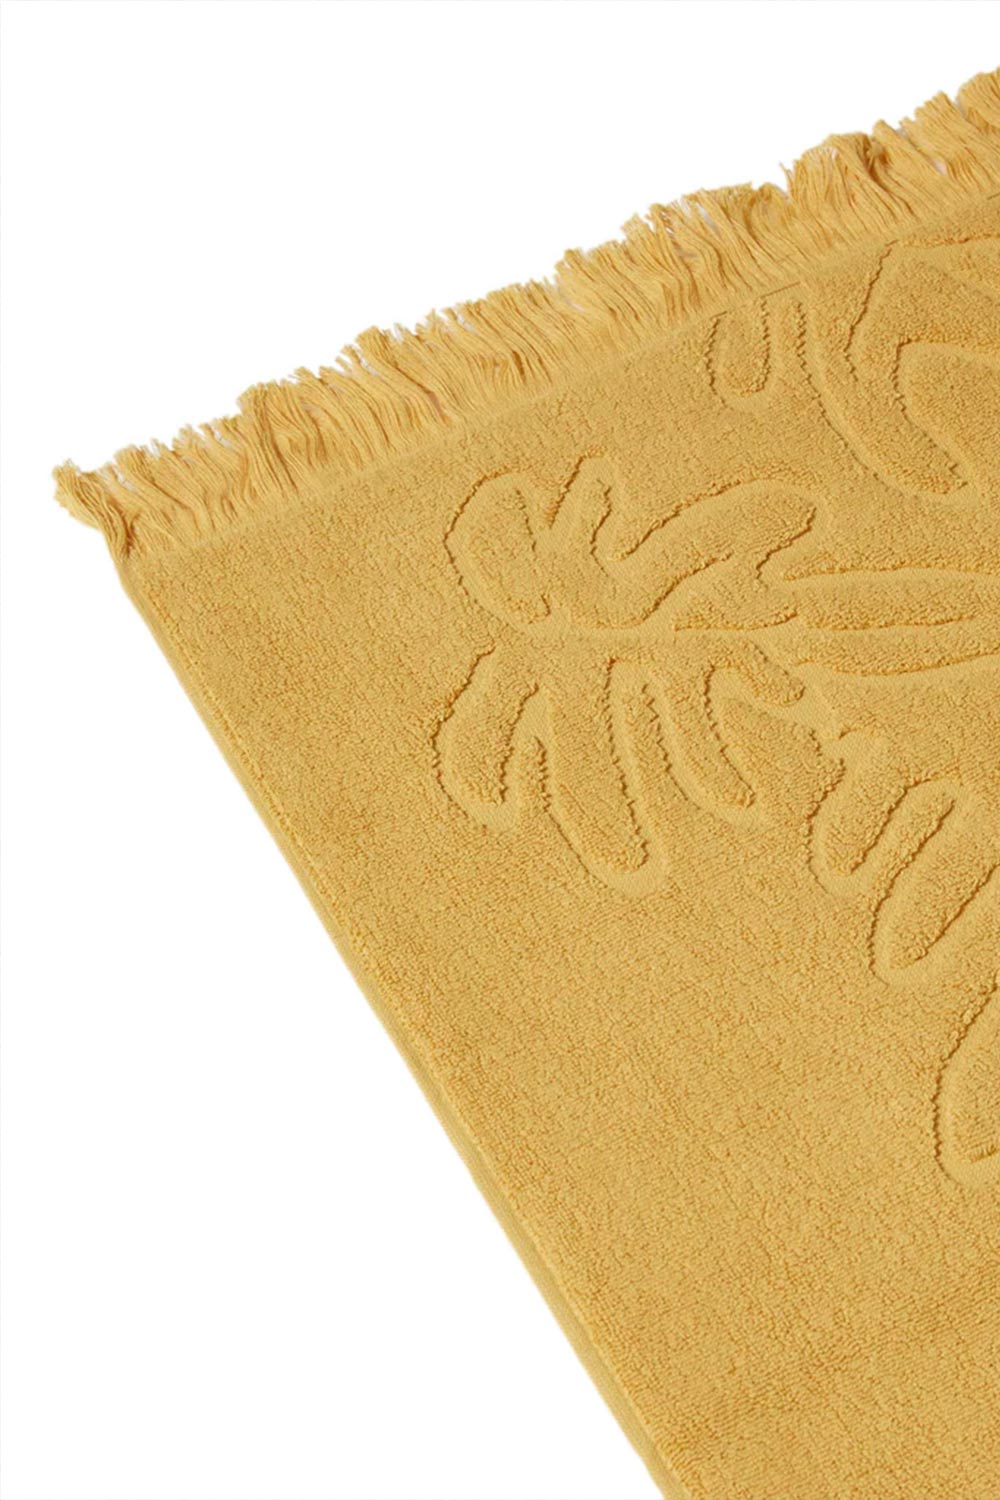 Mayde Beach Towels | Mayde Daintree Beach Towel - Mustard